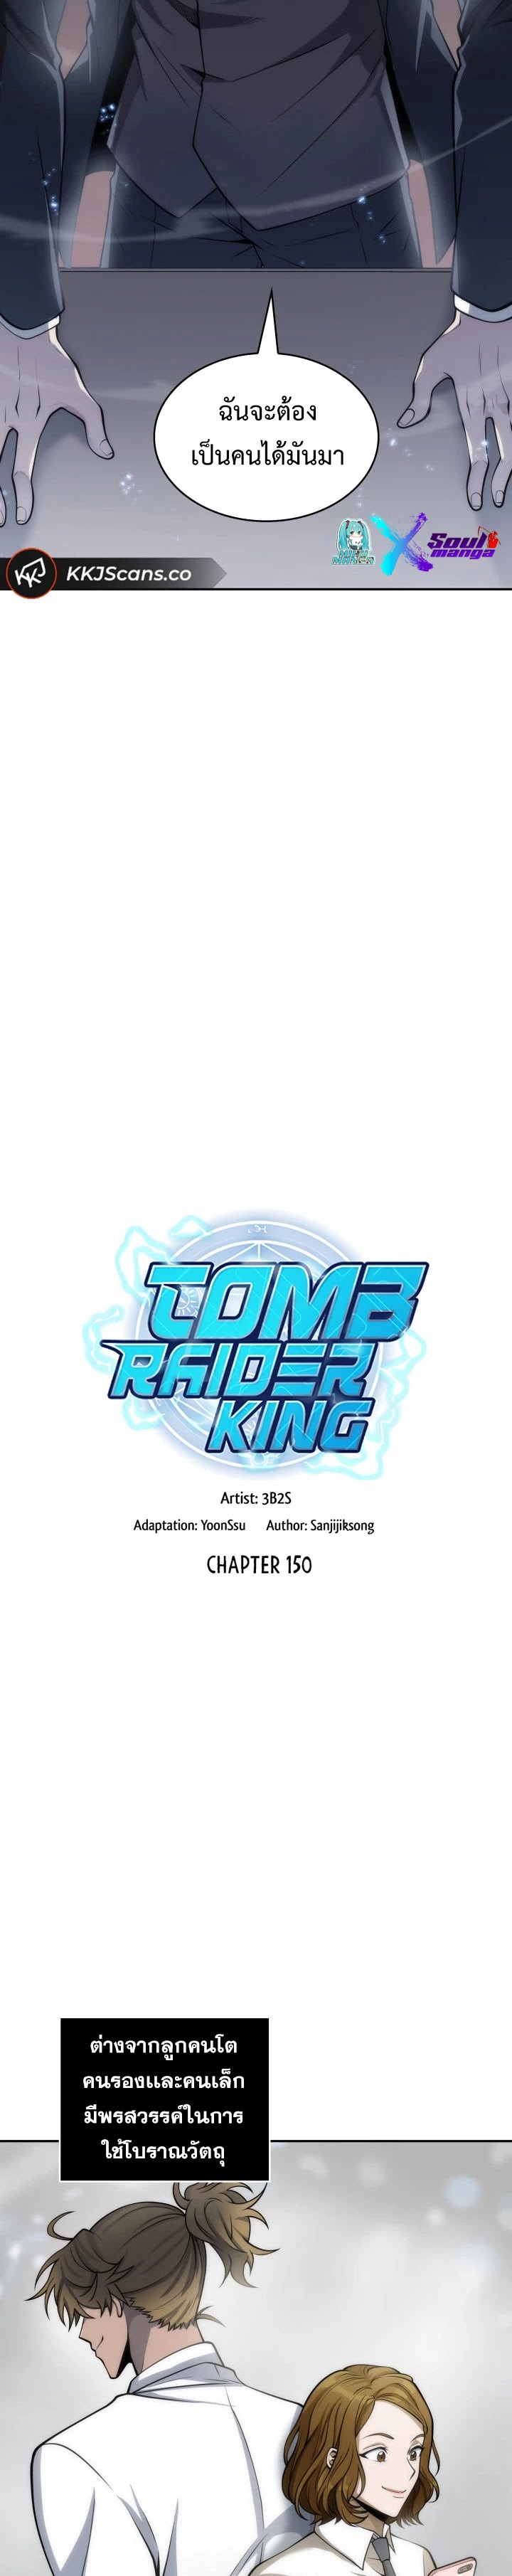 Tomb Raider King ราชันย์จอมโจรปล้นสุสาน ตอนที่ 150